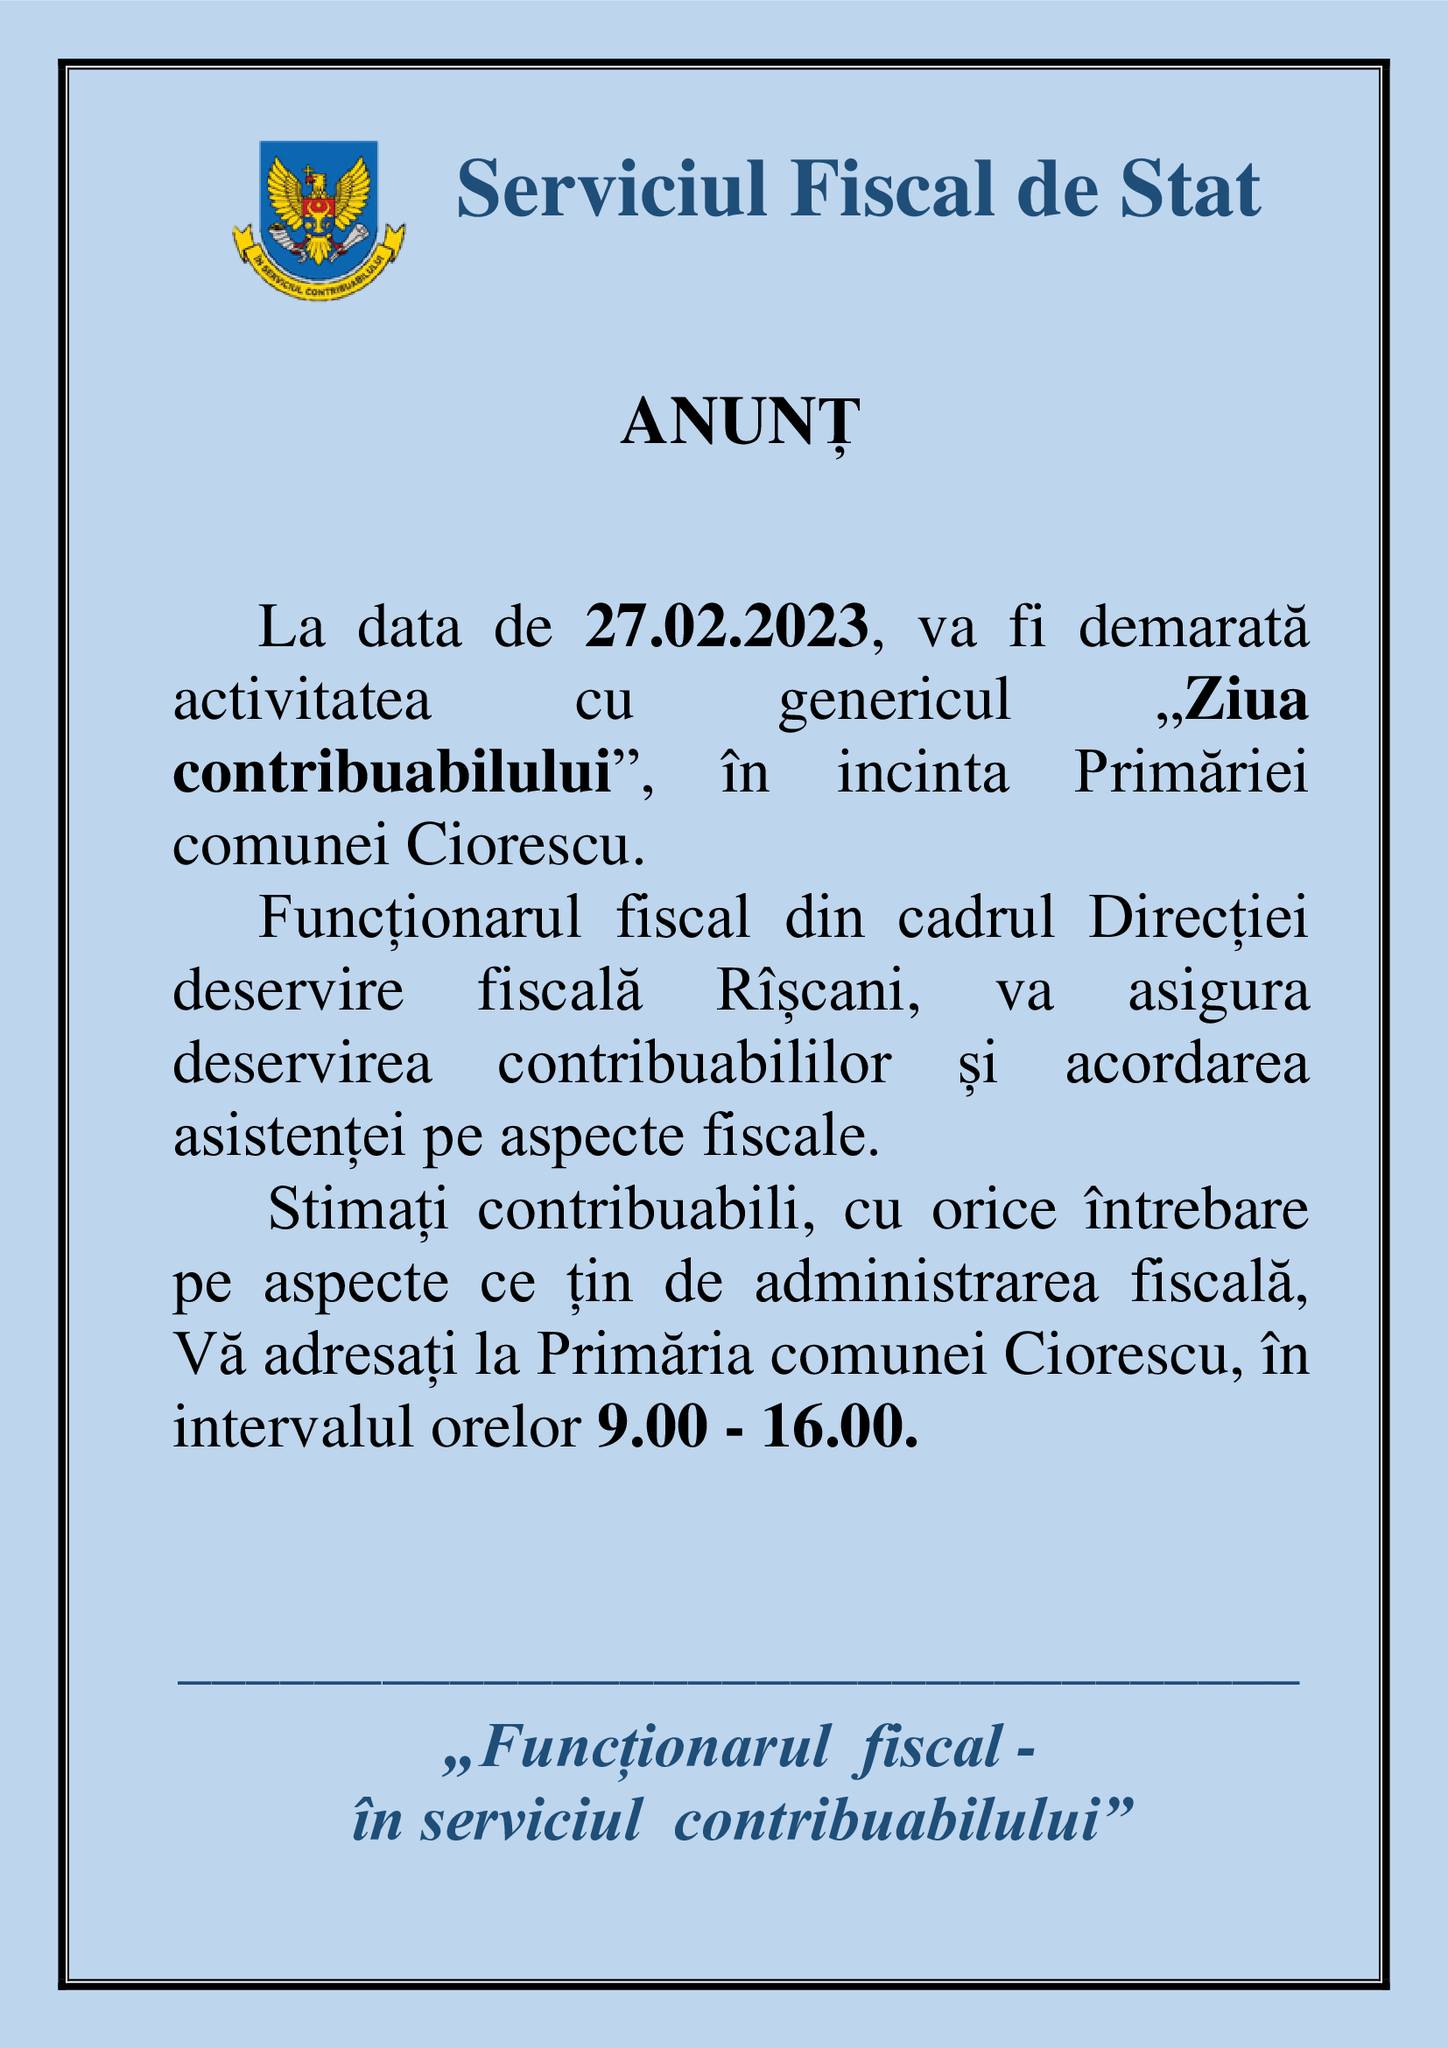 Anunț - Serviciul Fiscal de Stat